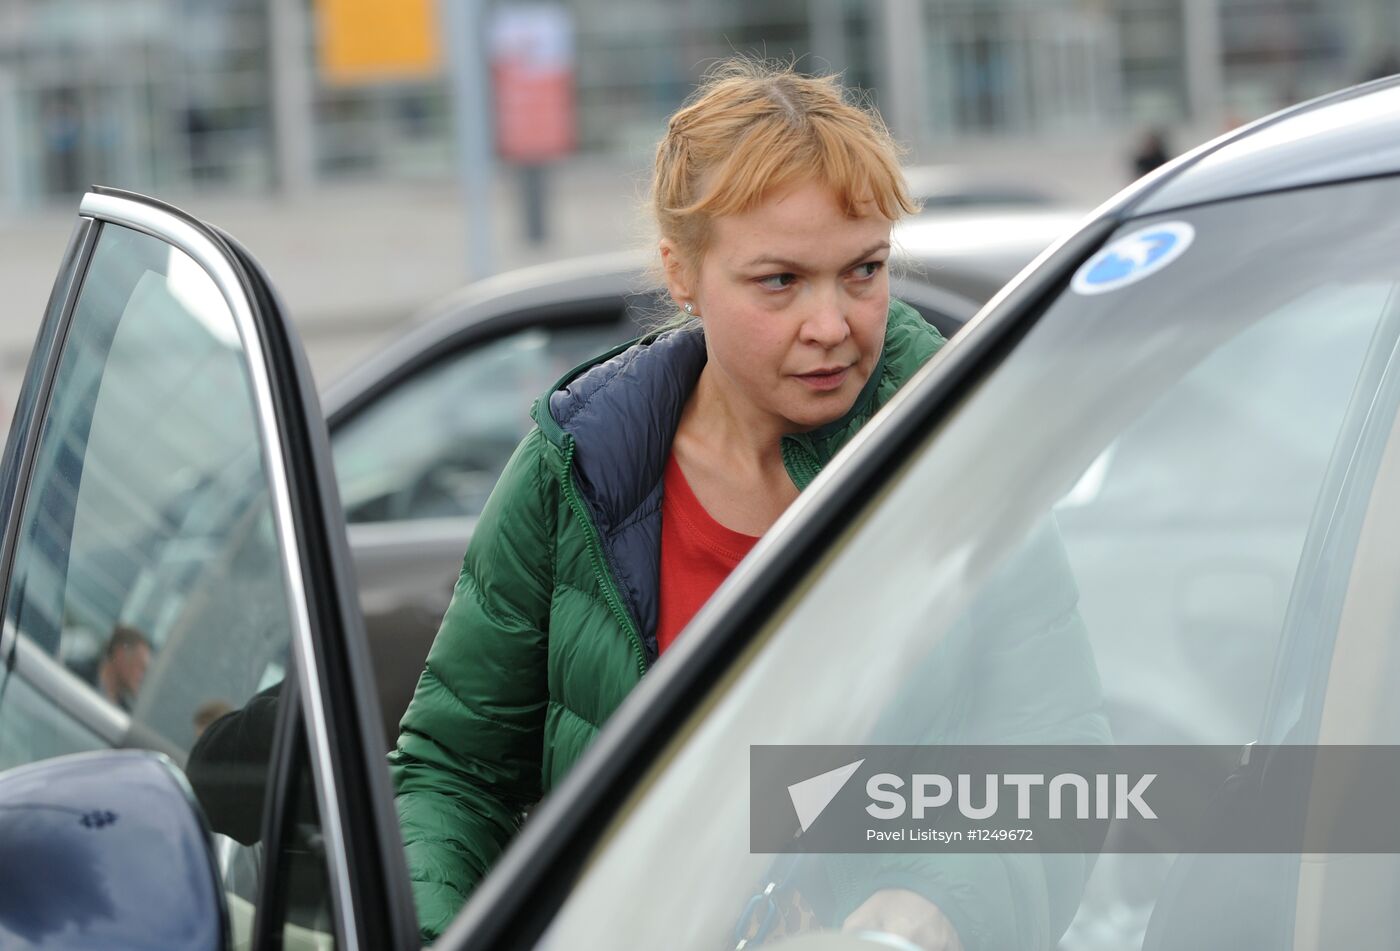 Ura.ru editor in chief Oksana Panova arrives in Yekaterinburg